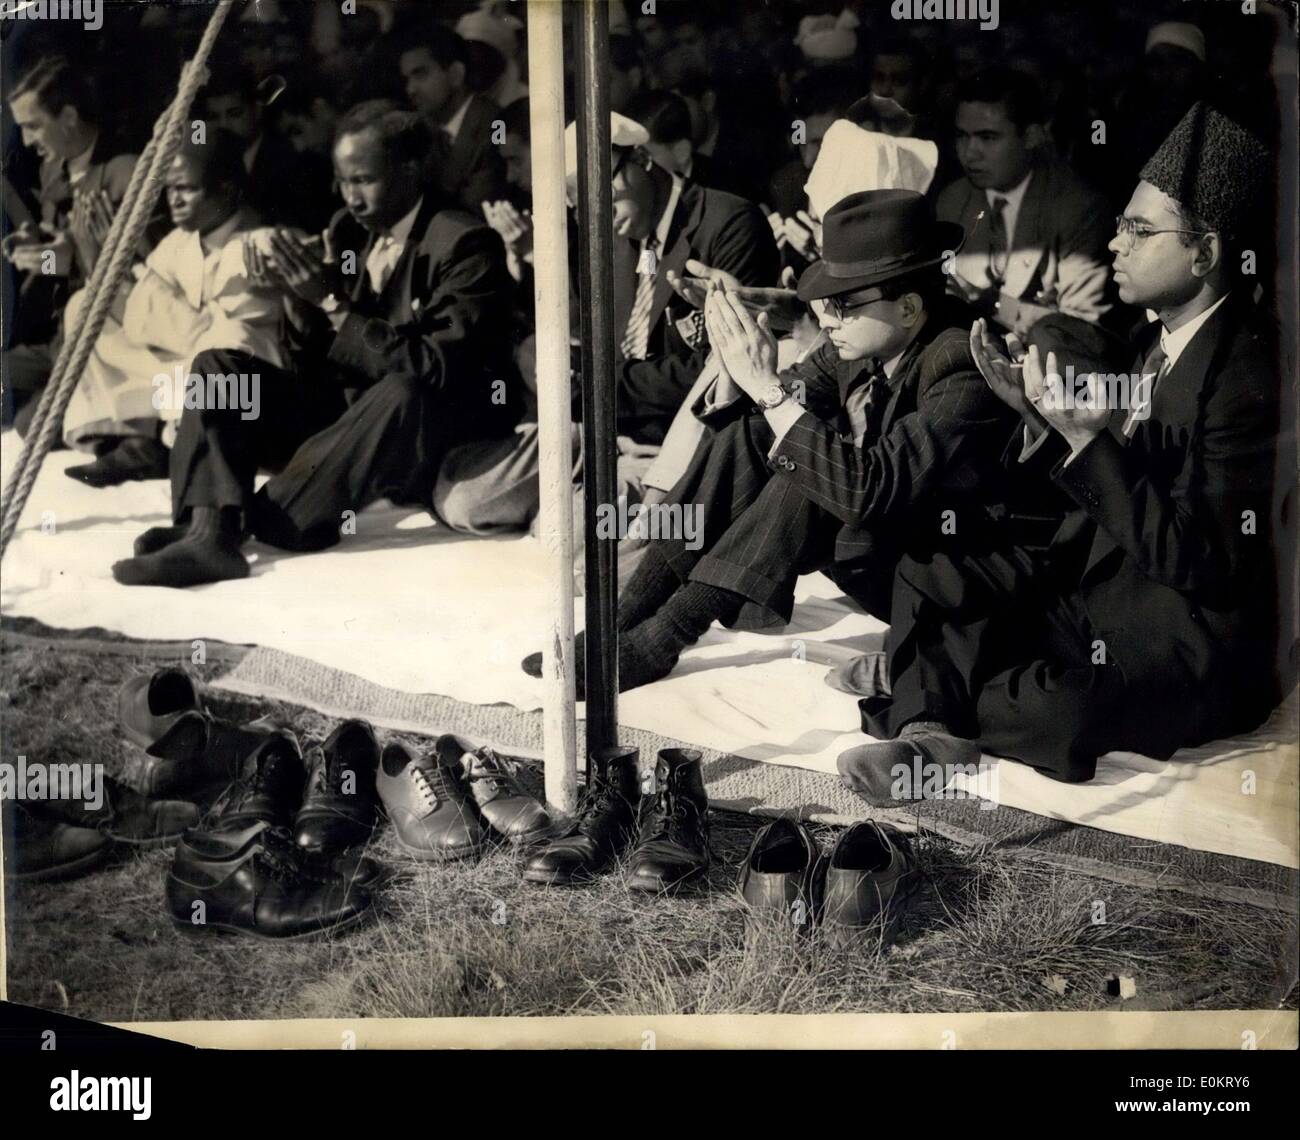 03 octobre, 1949 - Célébration de la -l-adha Festival mousseline à Woking : célébrations du Festival de mousseline -Wl-Adha a eu lieu à la Mosquée Shah Jehan, Woking aujourd'hui. Tous les musulmans du monde entier célèbrent avec la prière, le sacrifice d'un bélier suivie d'une fête. La photo montre la scène pendant les prières à la mosquée de Woking aujourd'hui, montrant les chaussures alignées à l'extérieur. Banque D'Images